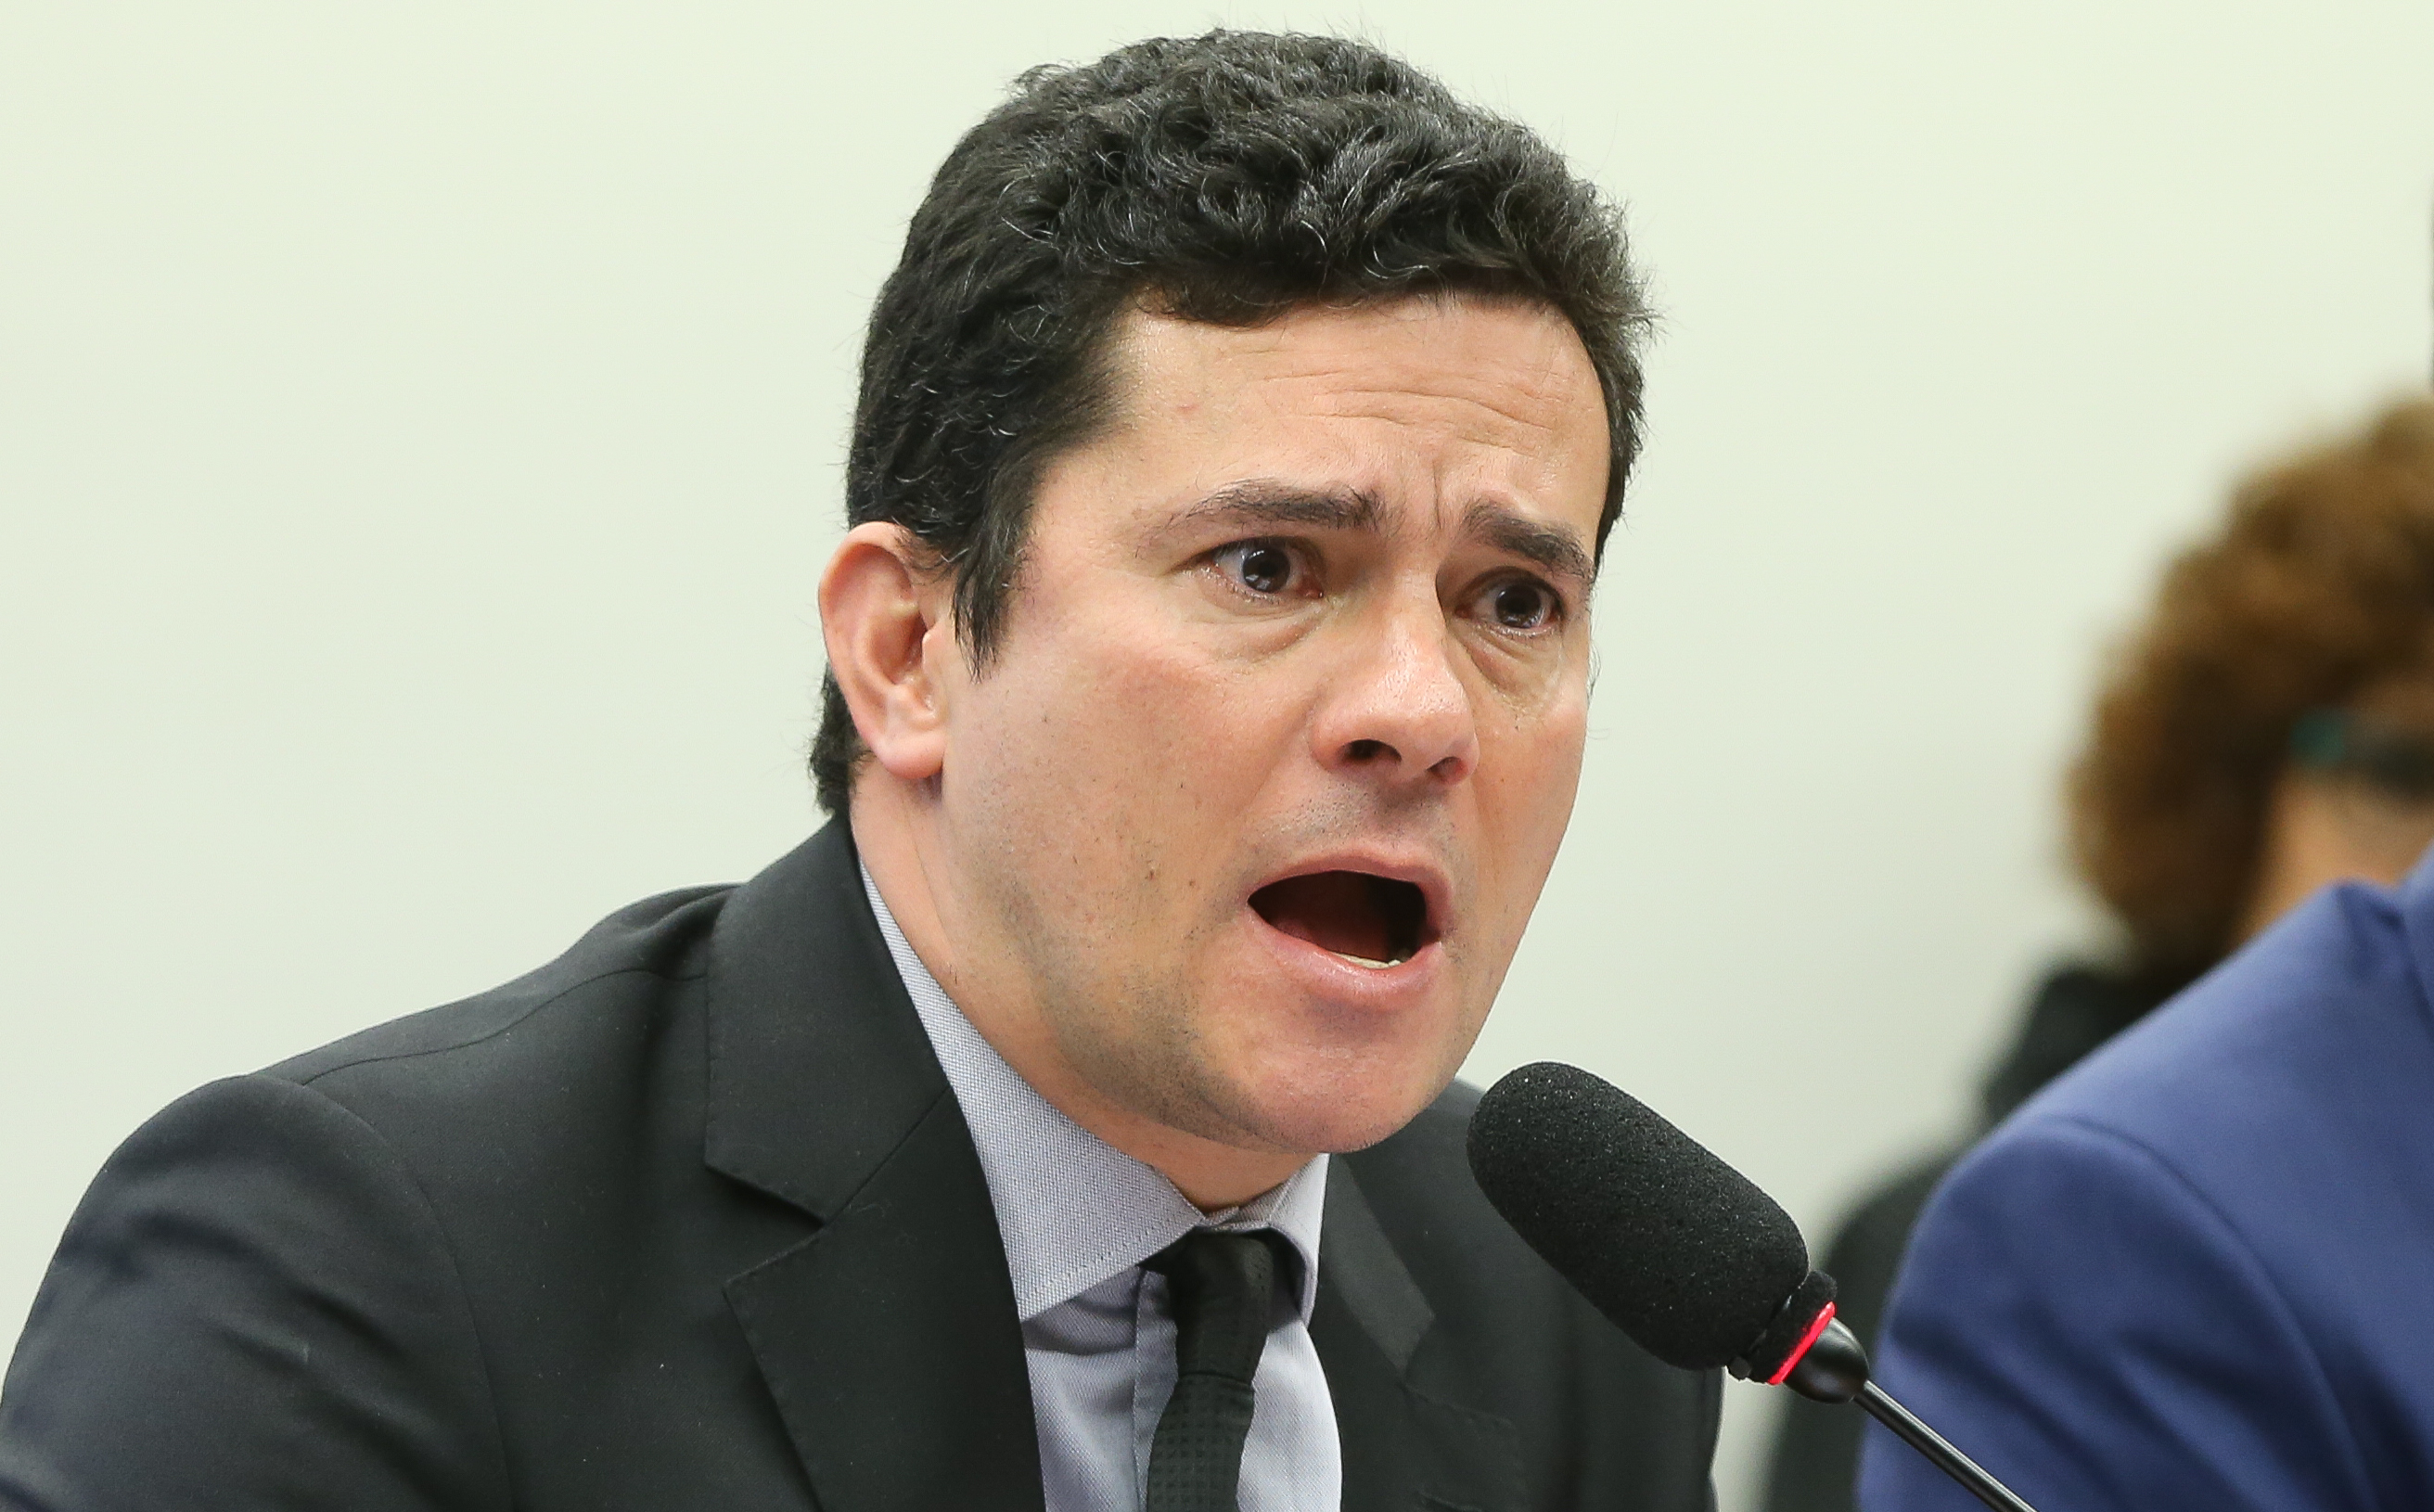 Petista questiona Moro sobre escutas ilegais e ele não responde